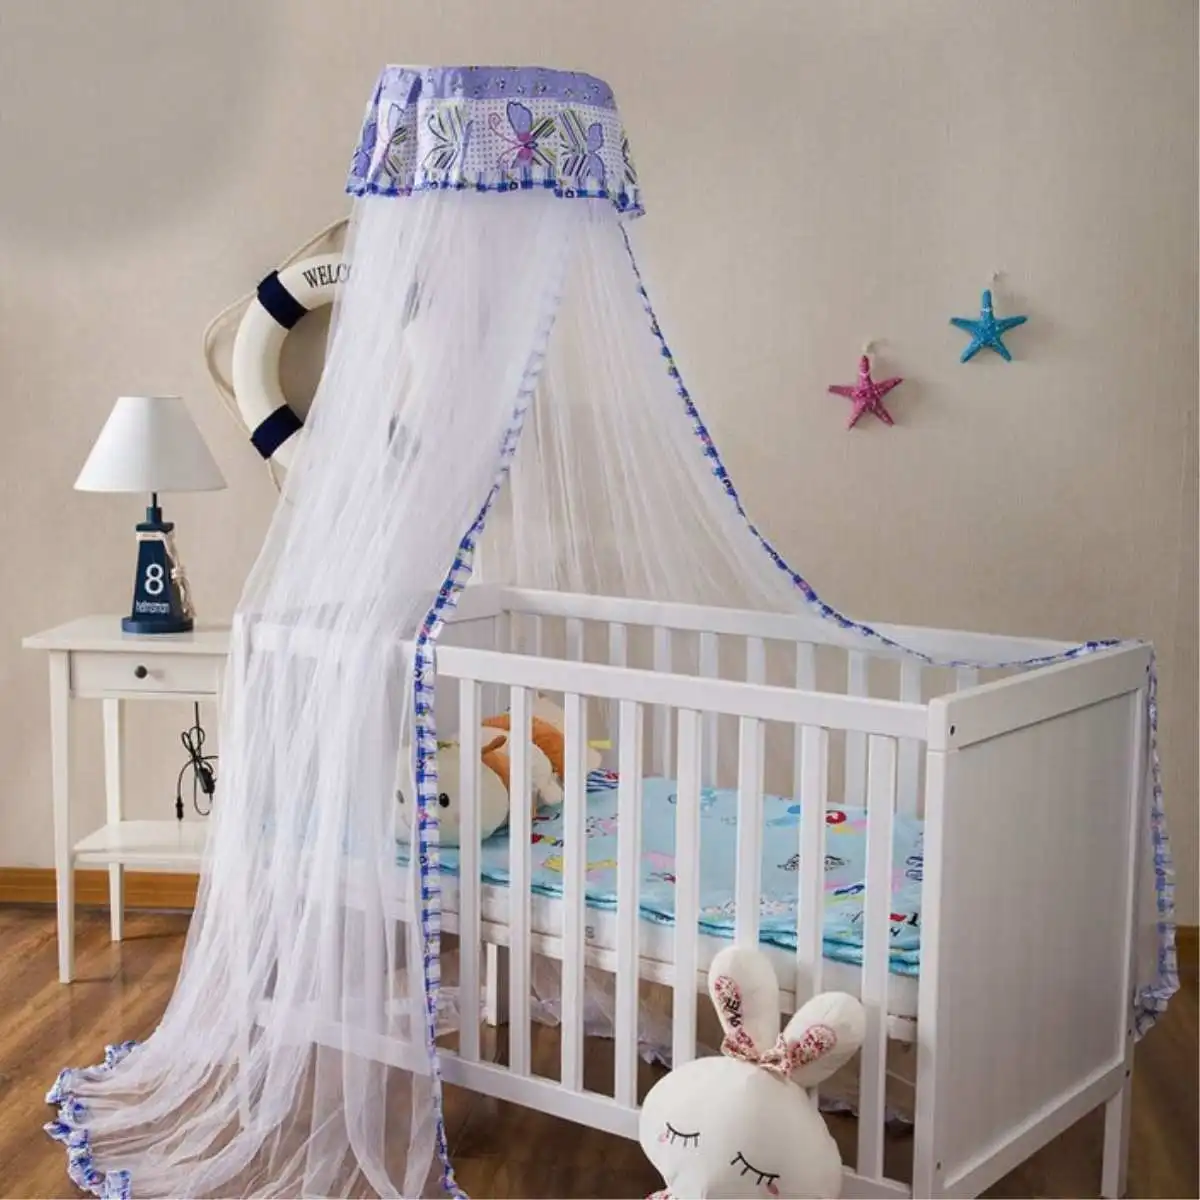 Бабочка детская кровать москитная сетка навес занавес палатки детские постельные принадлежности купольная полиэфирная кроватка сетка Детские принадлежности